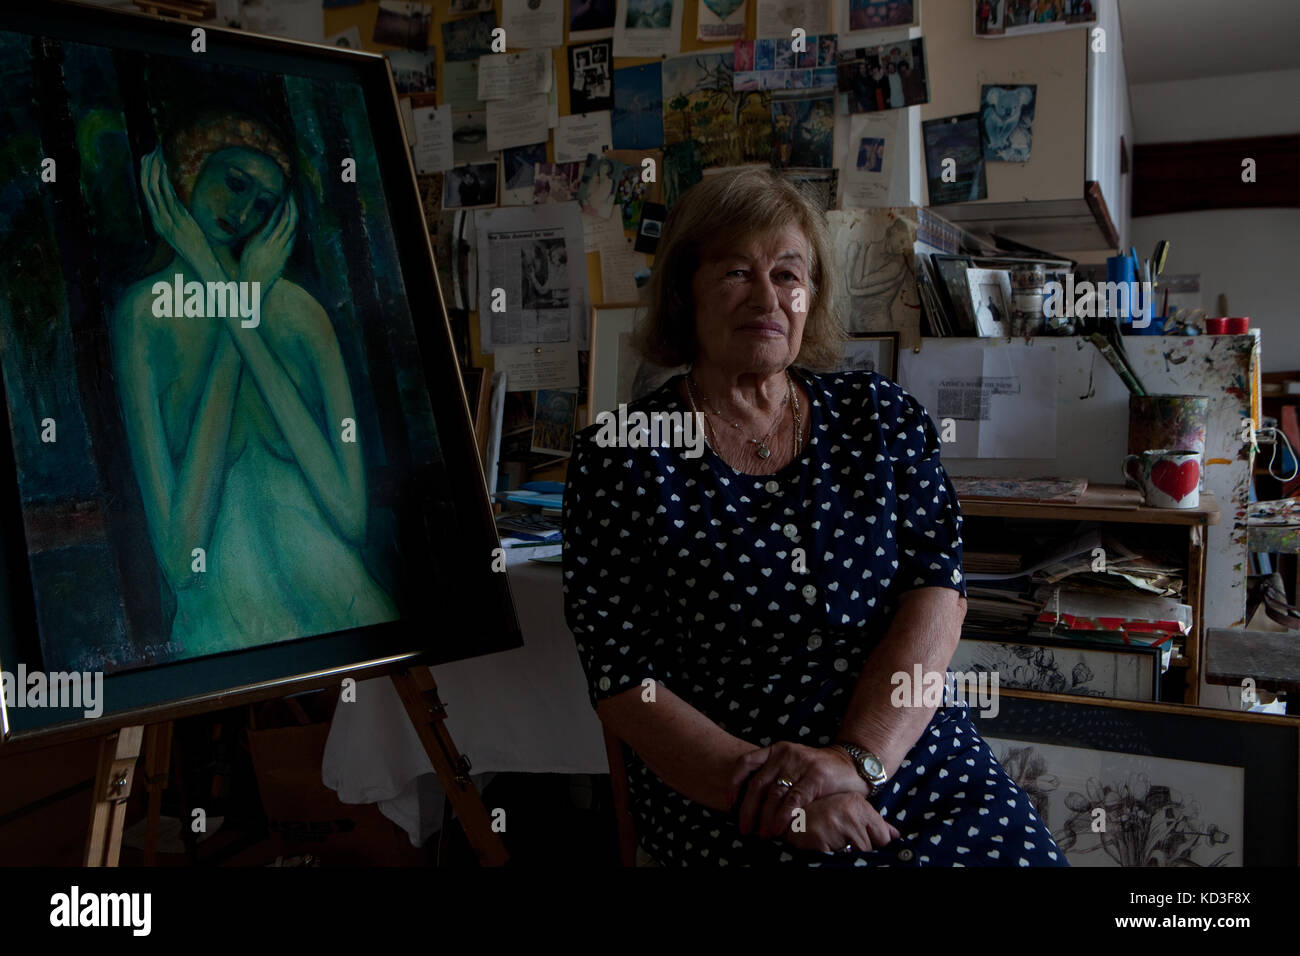 Holocaust Survivor und Interpret Alicia Melamed Adams mit ihrer Malerei "Trauer" zeigt sich von den Nazis inhaftiert. In ihrem Atelier in London, Großbritannien Stockfoto